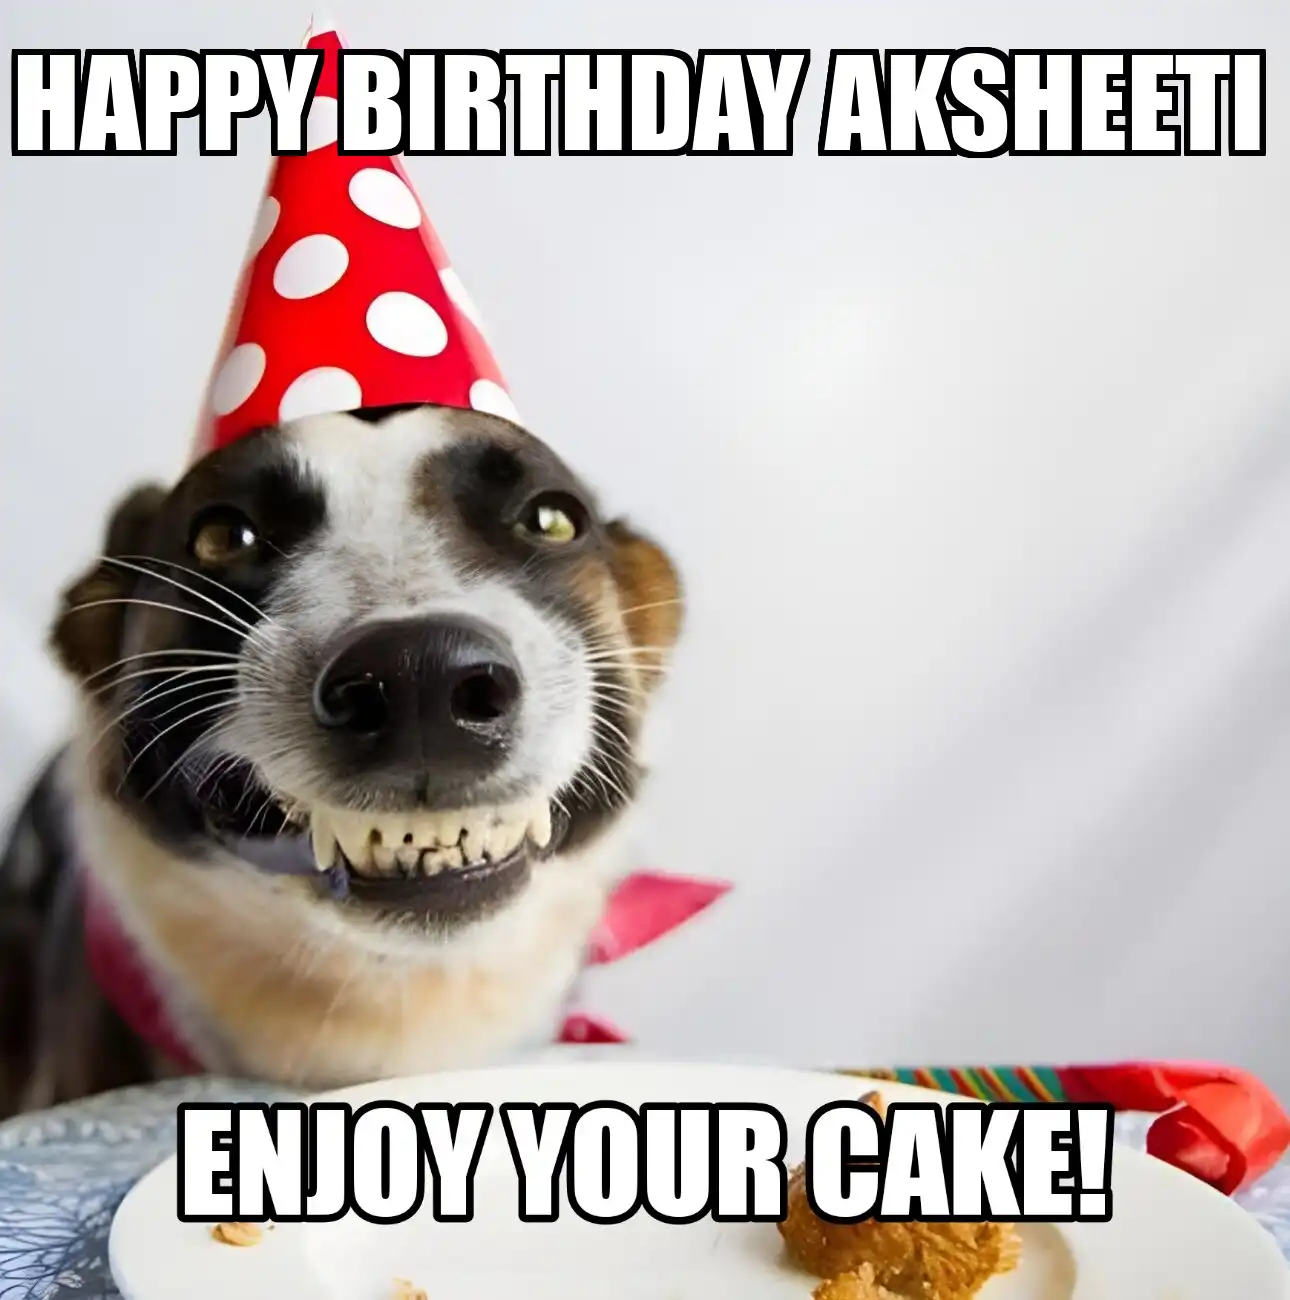 Happy Birthday Aksheeti Enjoy Your Cake Dog Meme